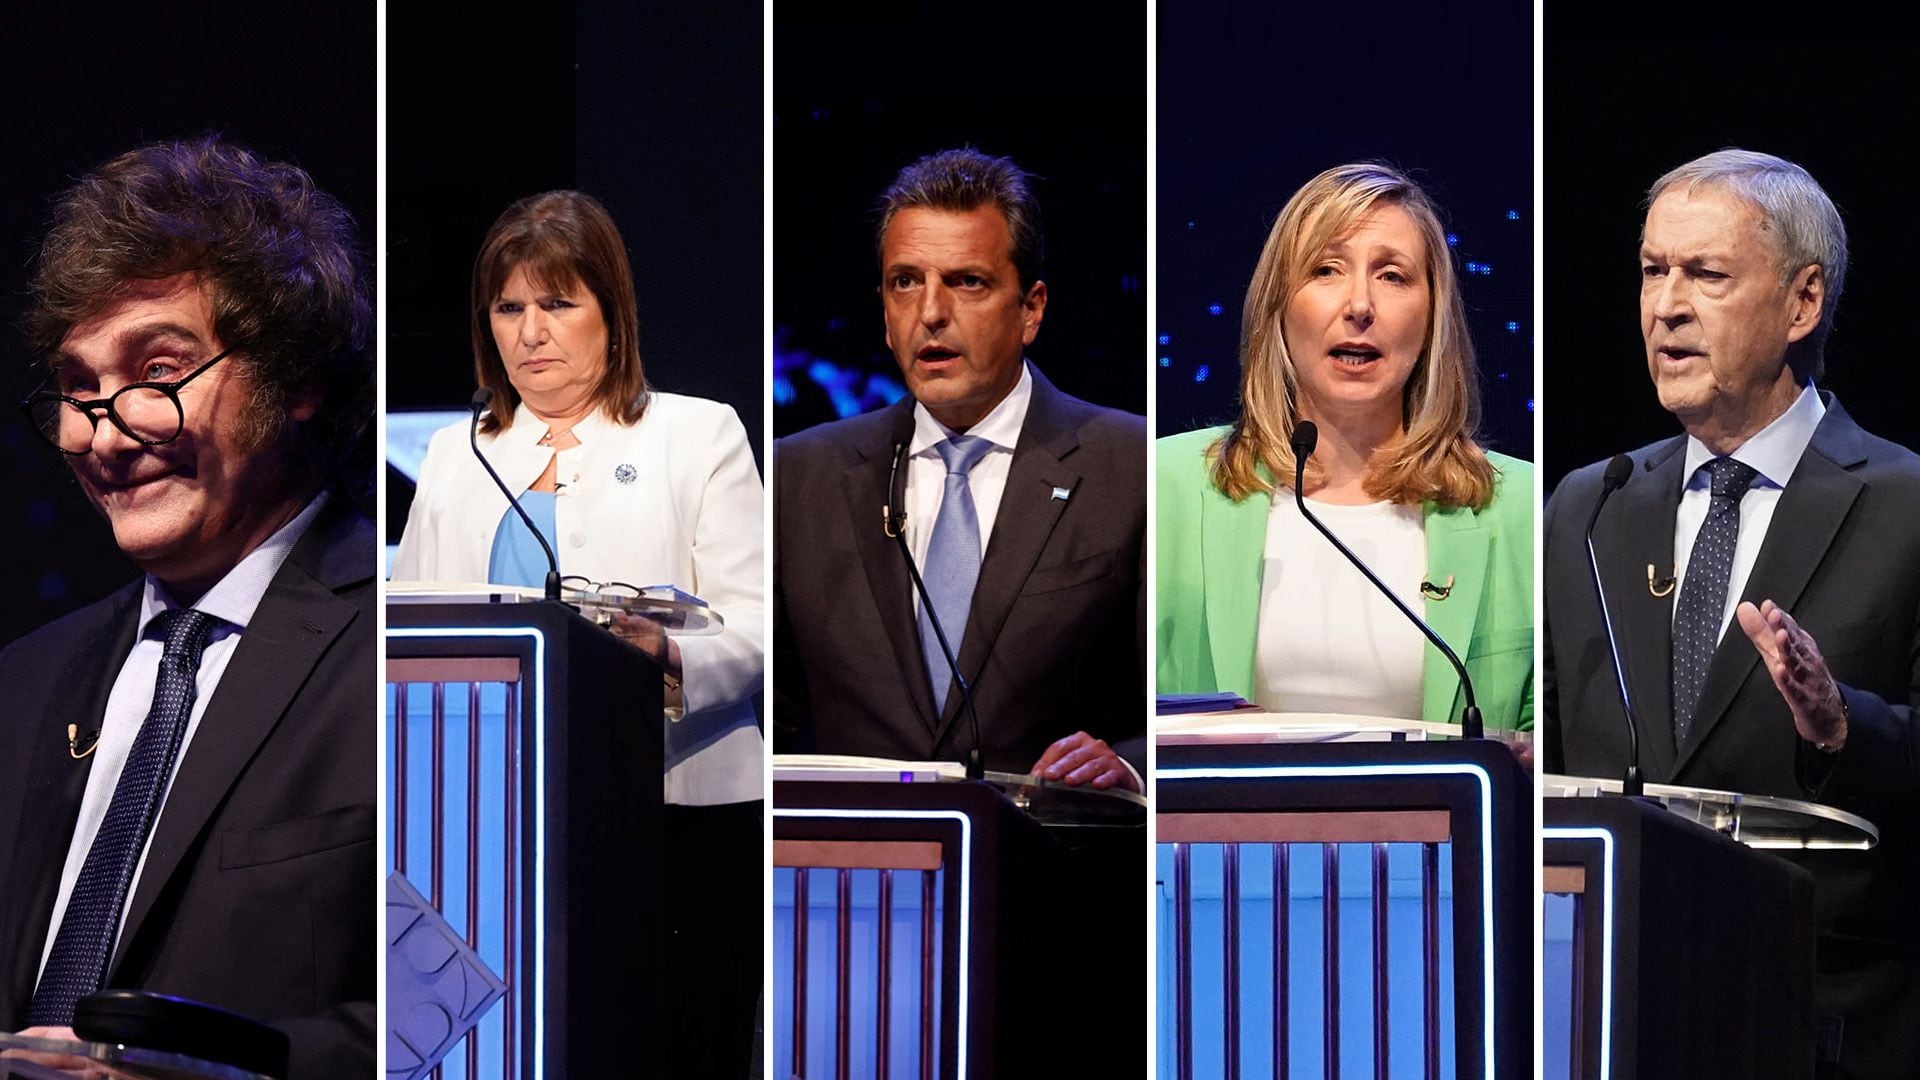 El lenguaje no verbal de los candidatos en el debate presidencial analizado por expertos